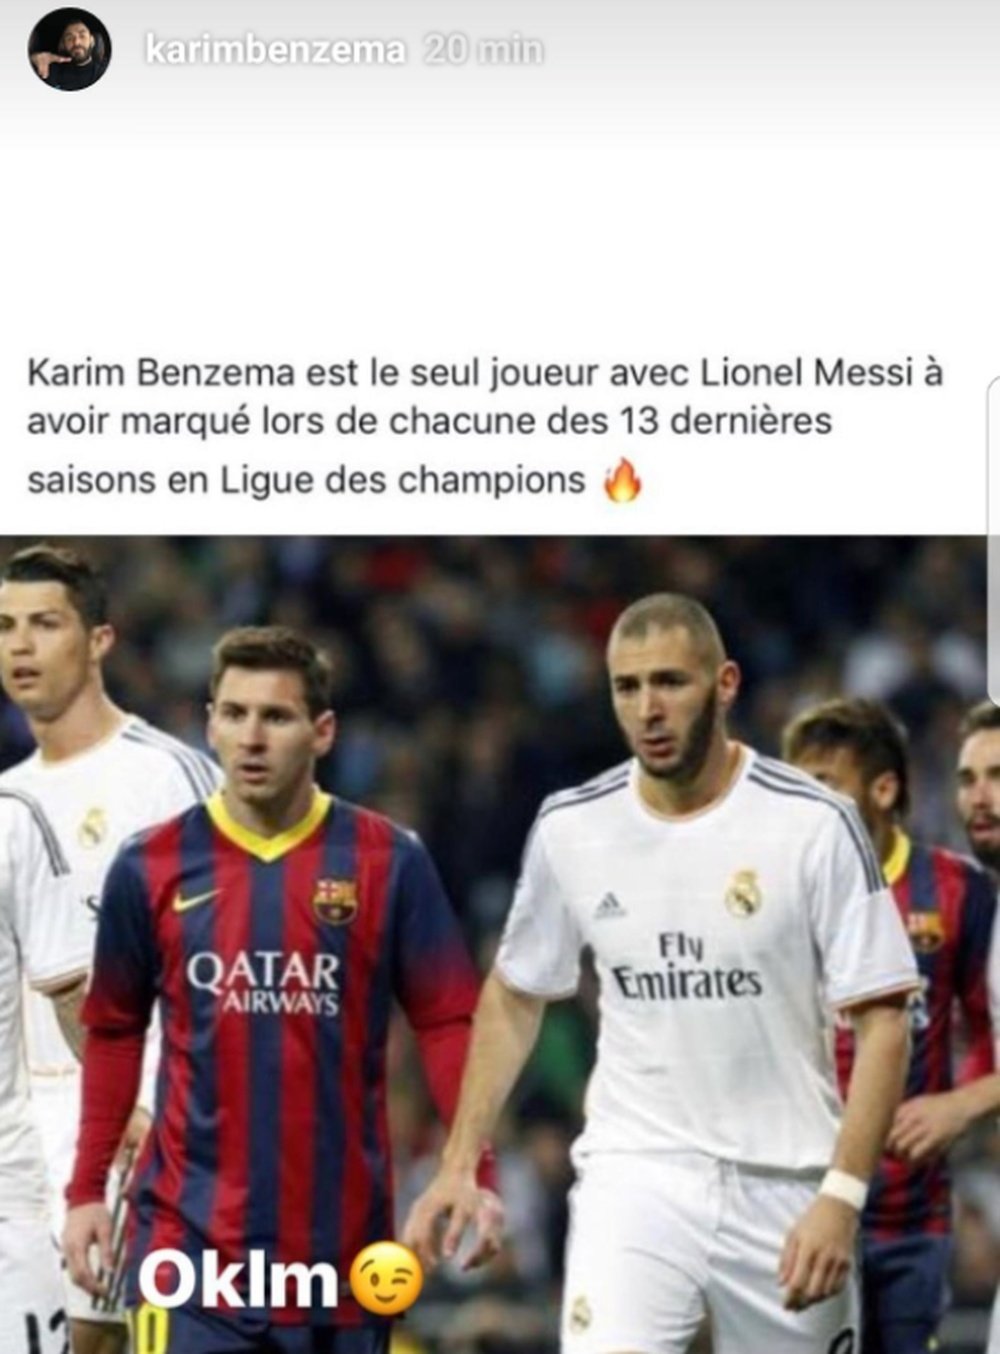 El delantero francés acumula 13 temporadas consecutivas marcando en Champions. Instagram/Karimbenzem